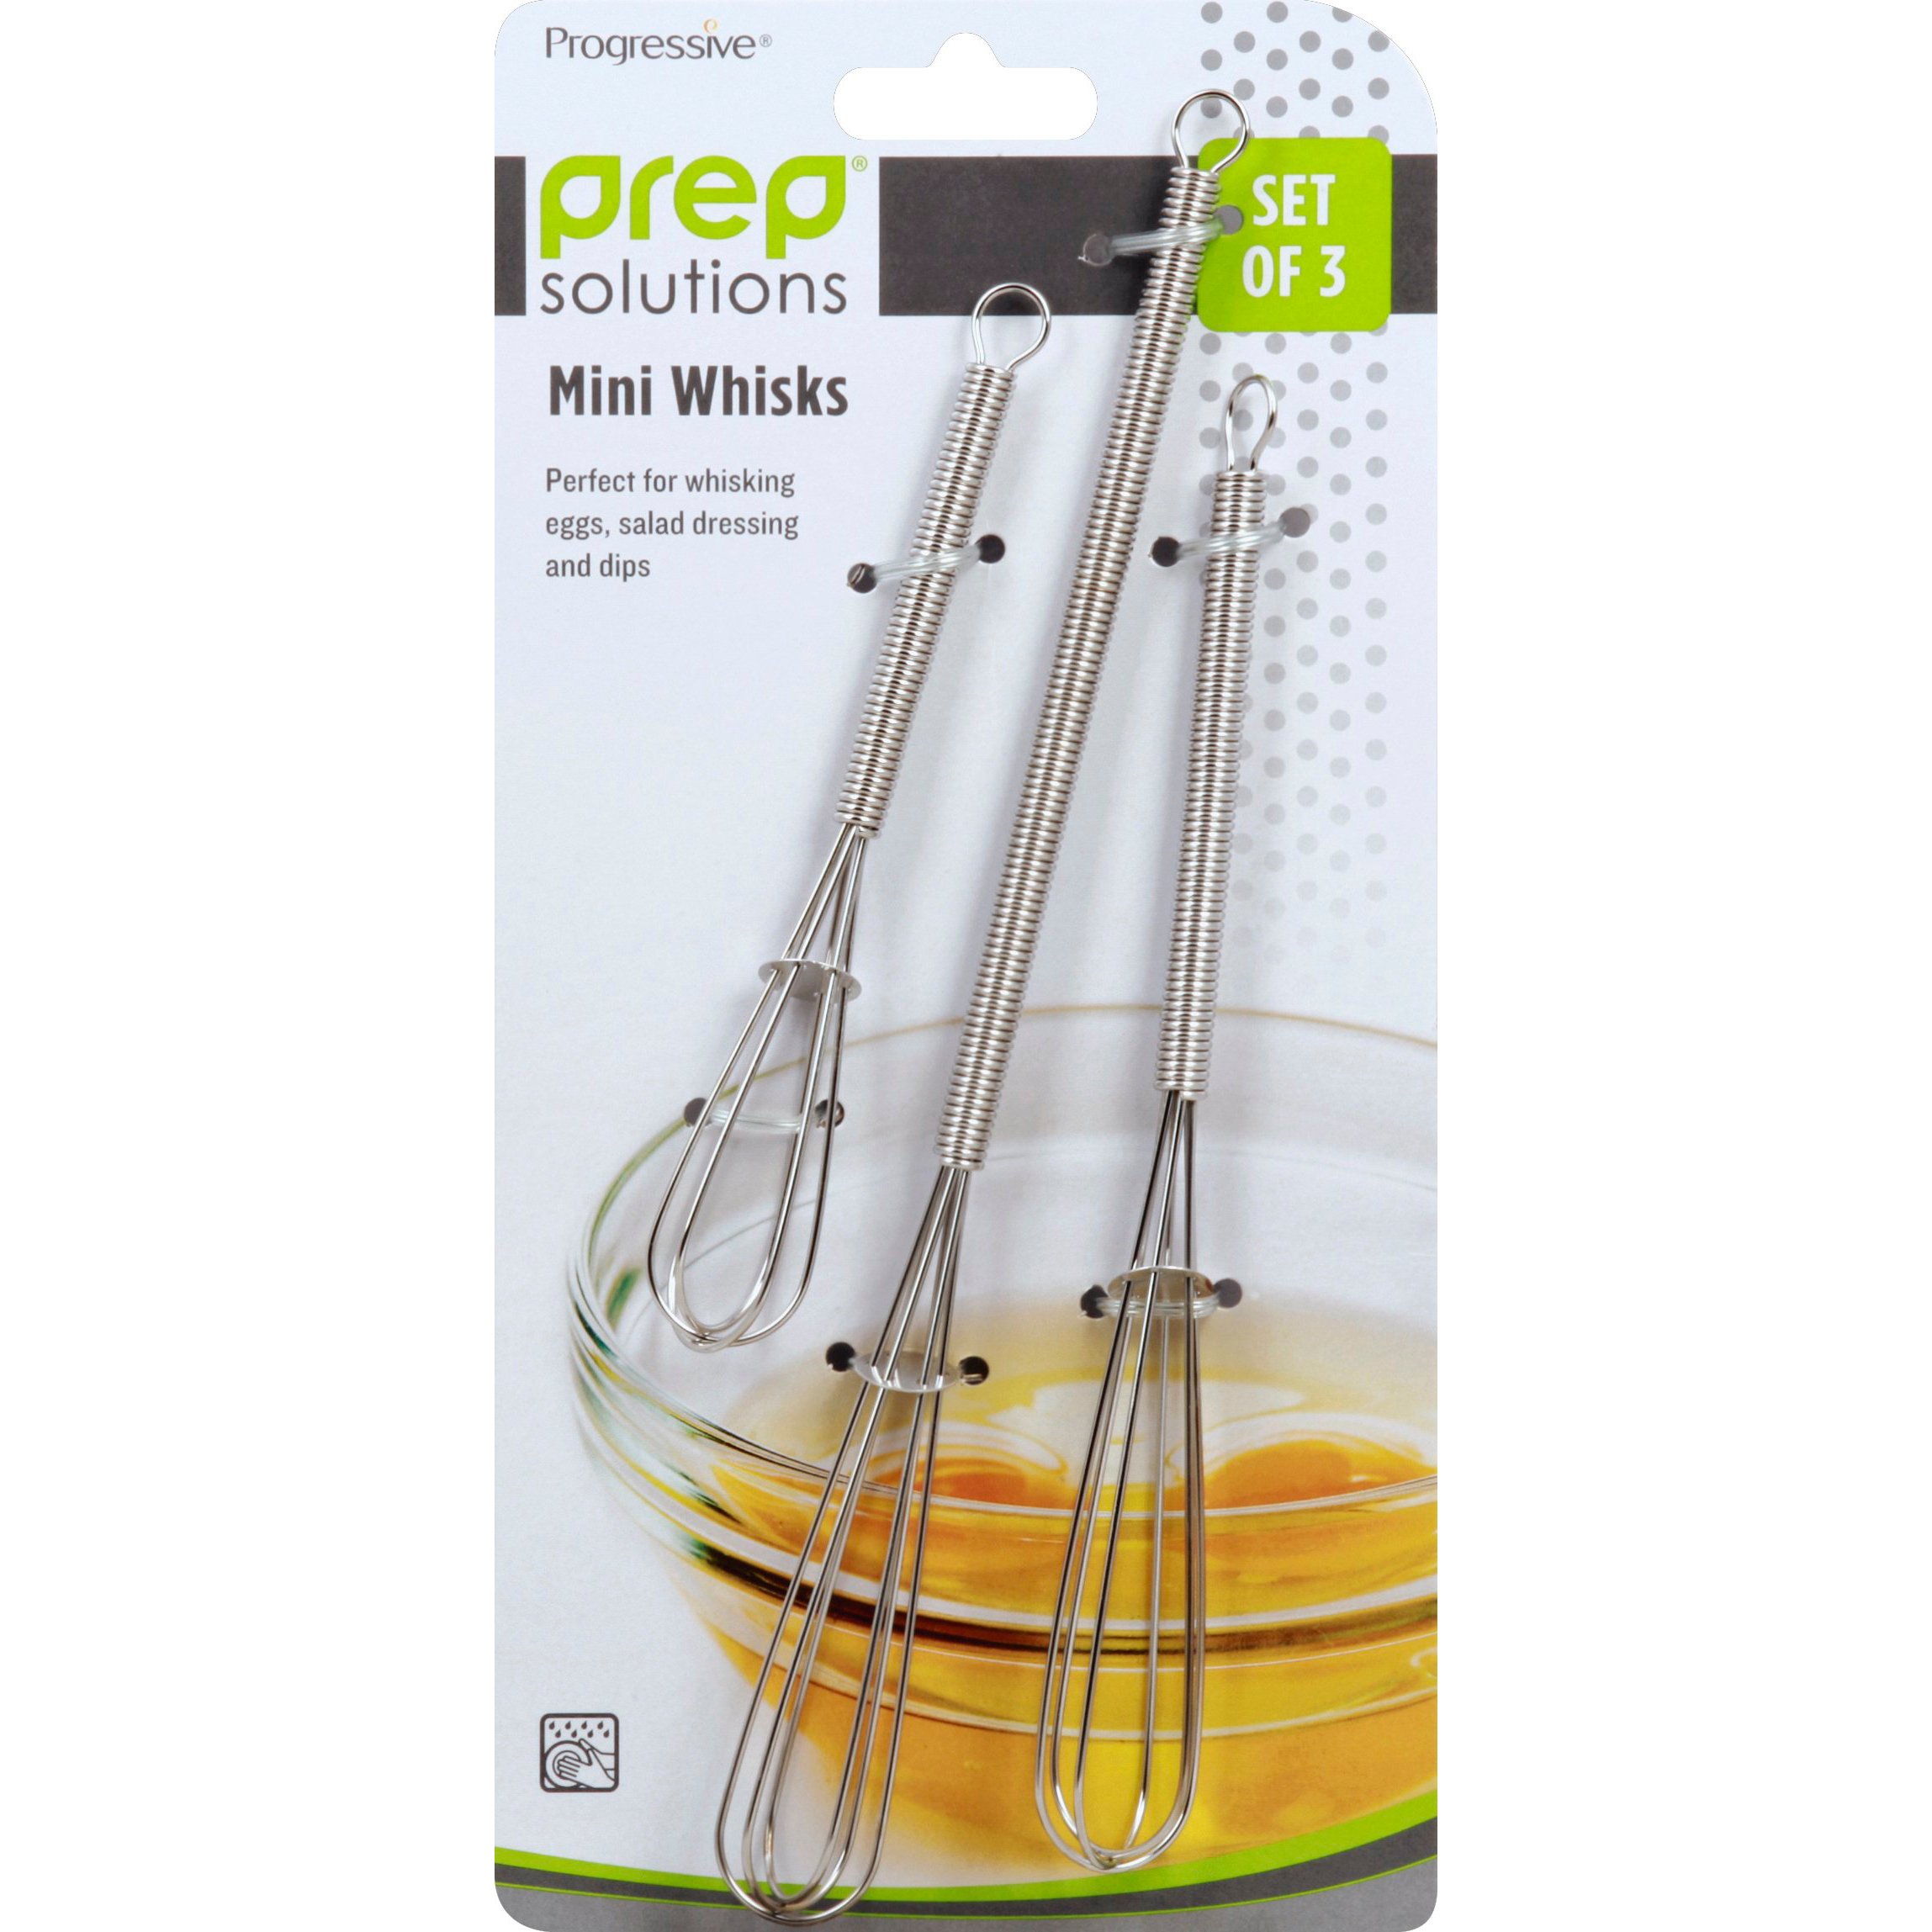 Progressive Mini Whisk Set - Shop Utensils & Gadgets at H-E-B